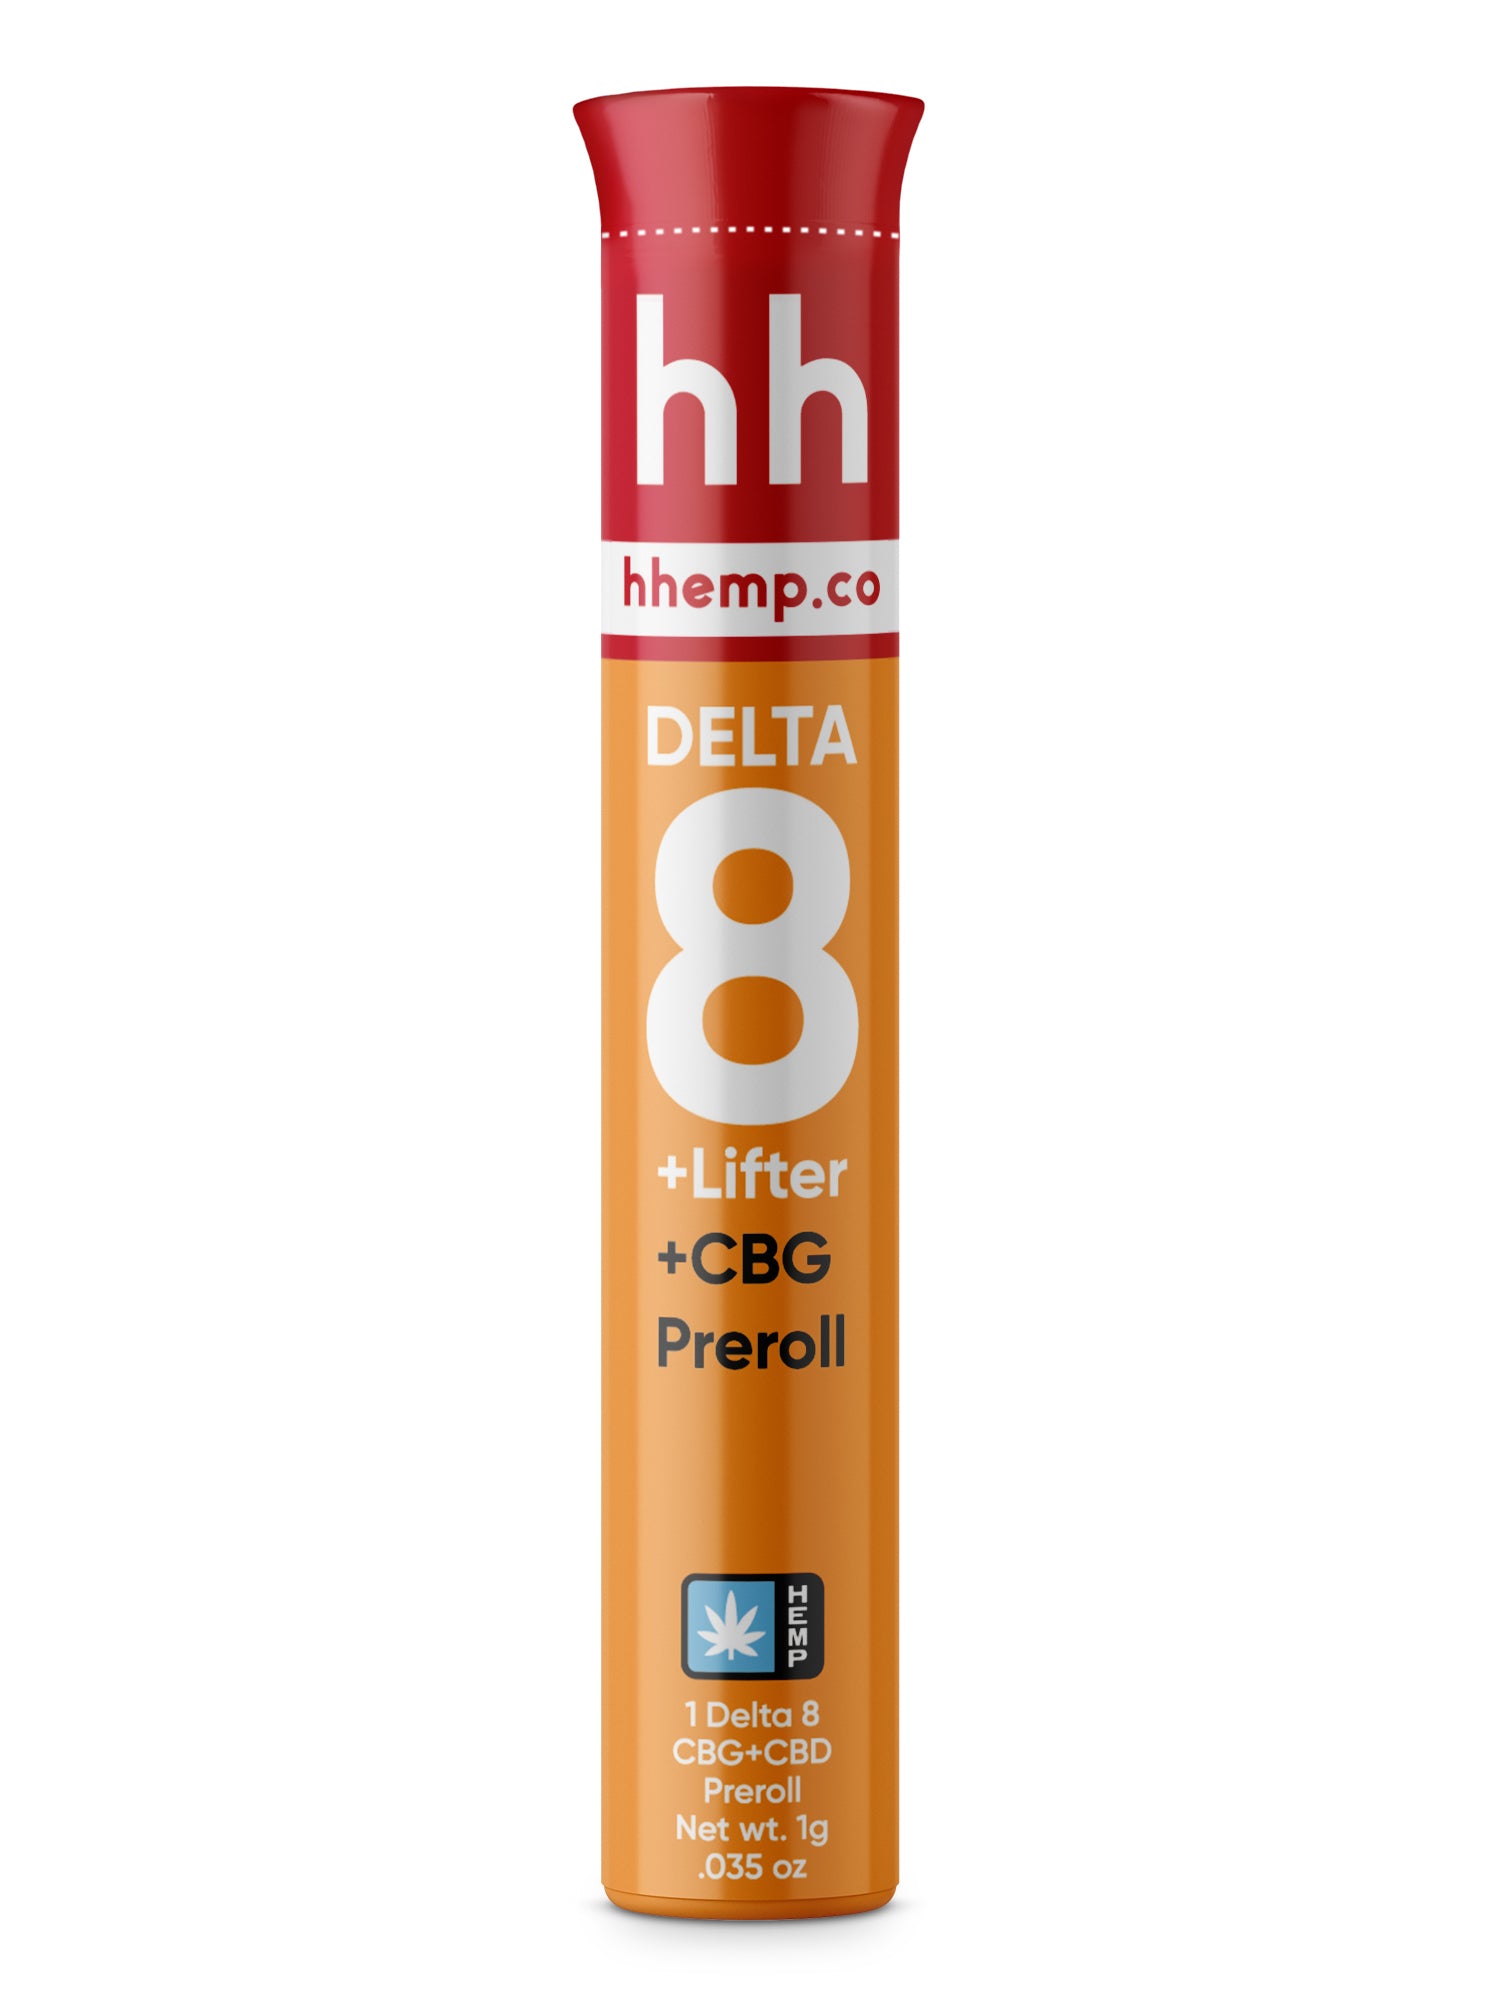 hhemp.co Delta 8 Infused Preroll - CBG + Lifter